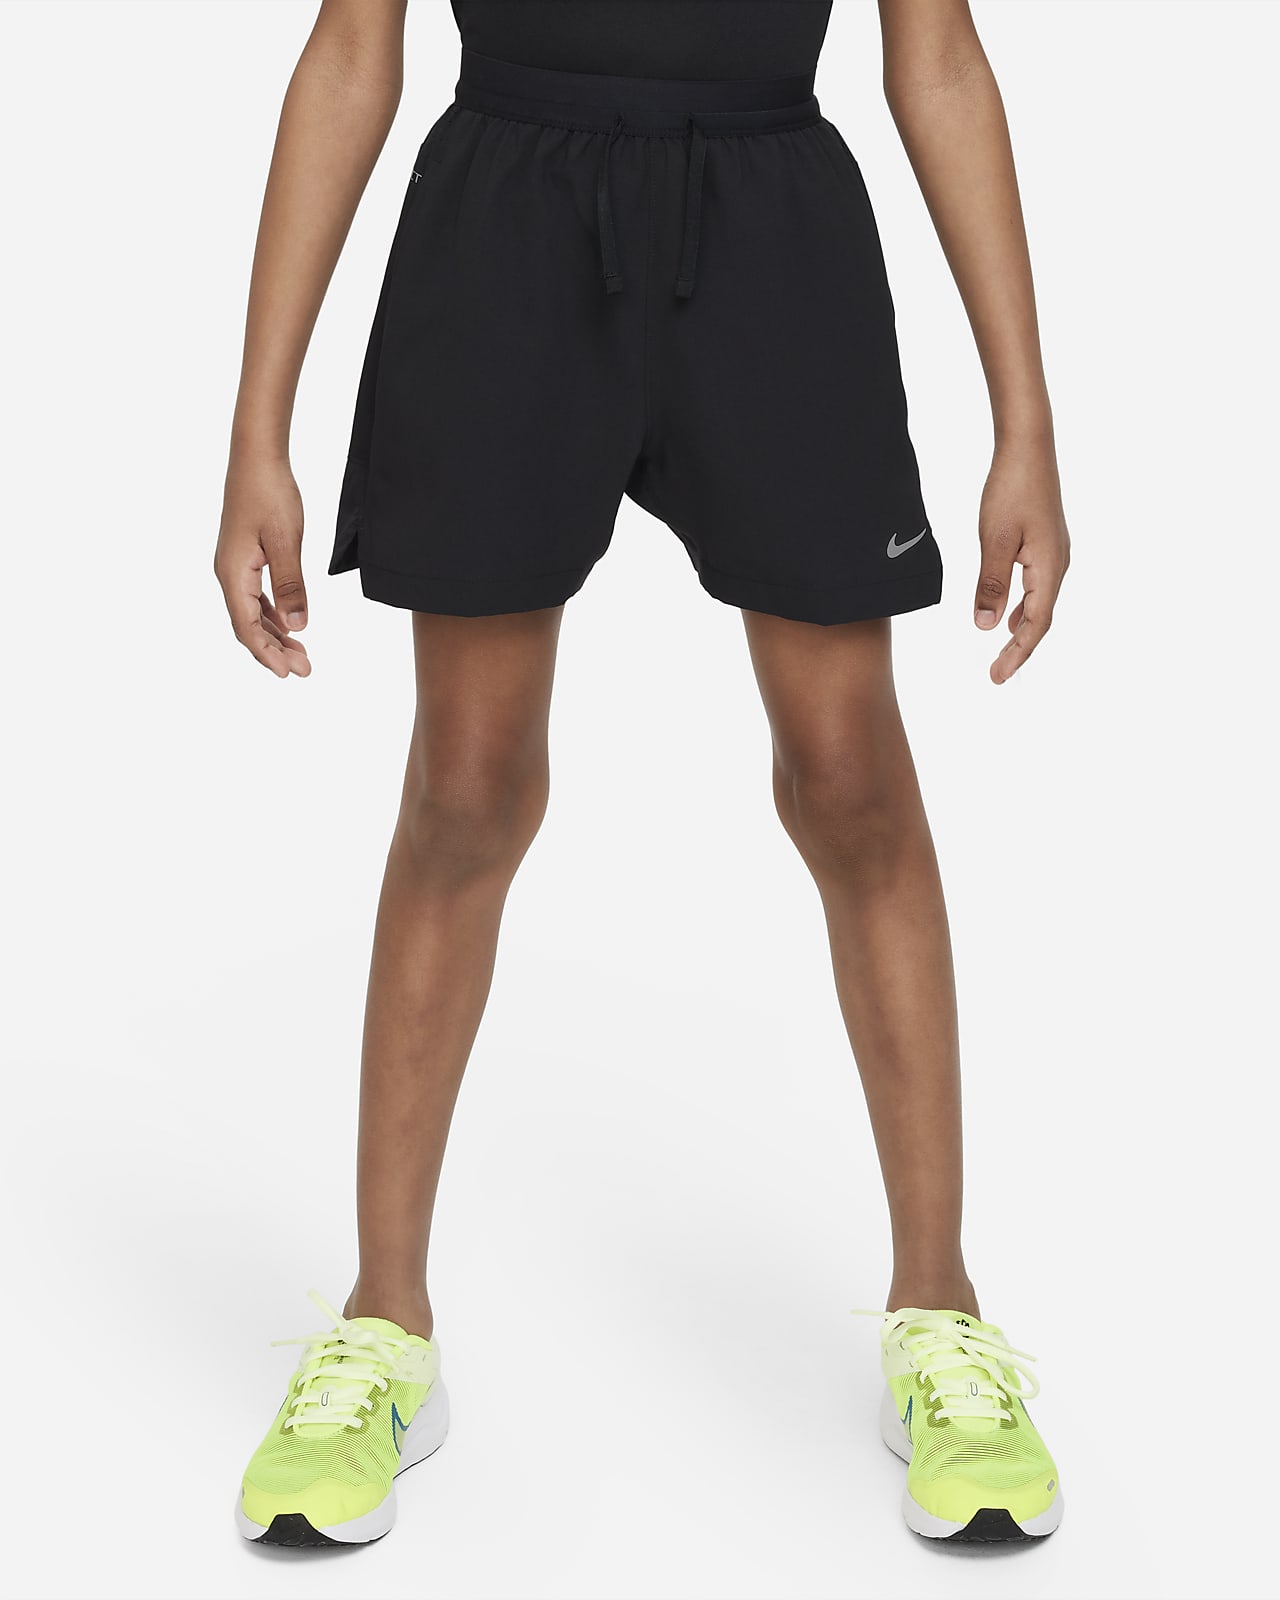 Calções de treino Dri-FIT Nike Multi Tech EasyOn Júnior (Rapaz)